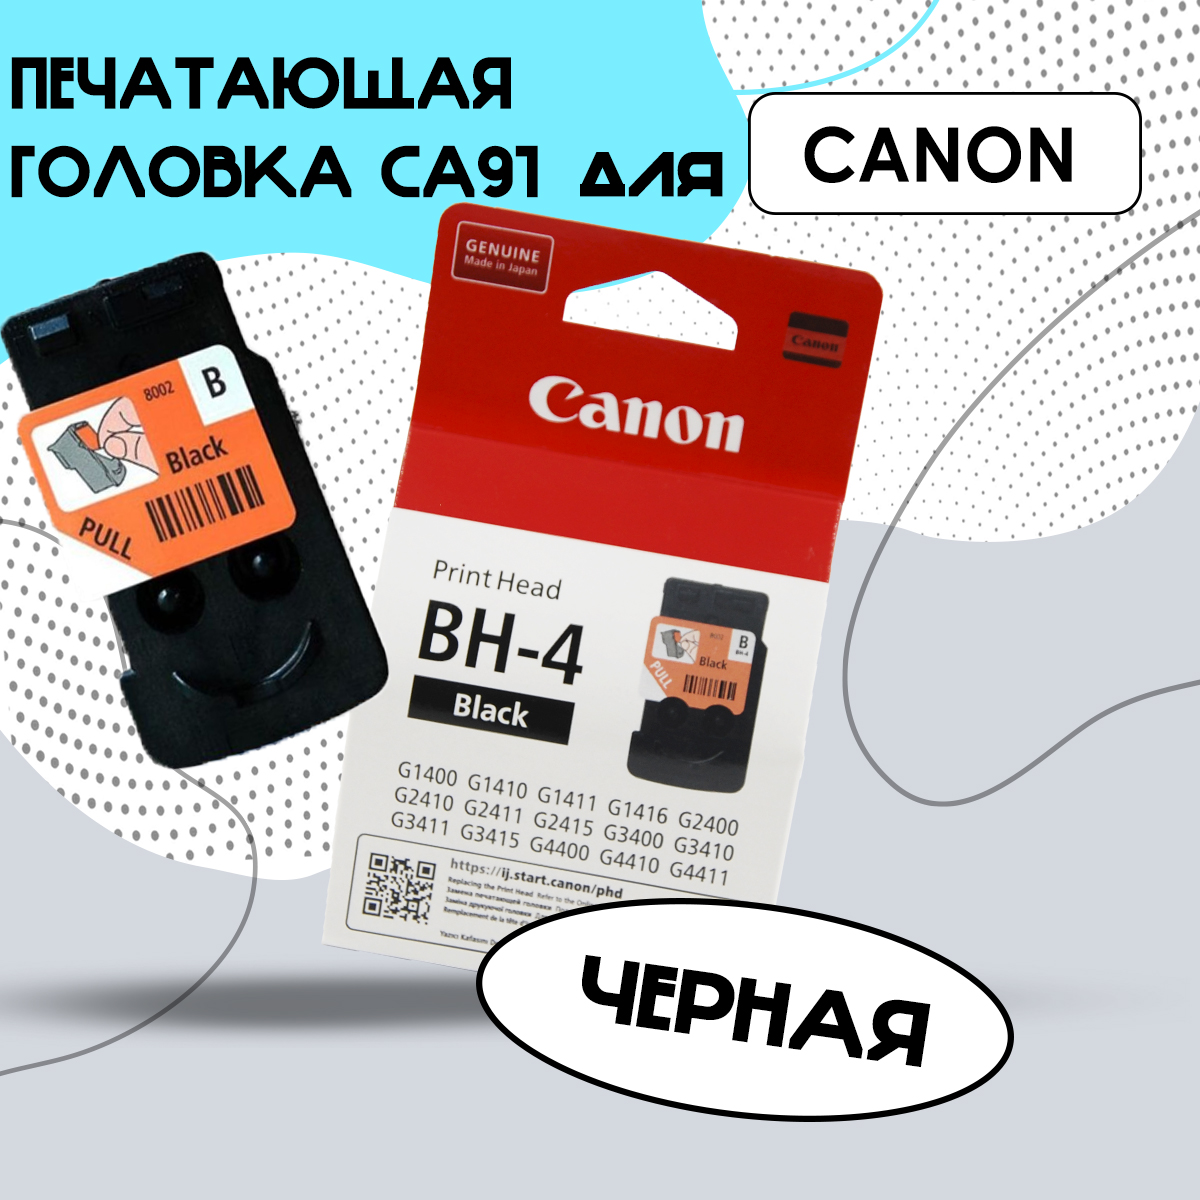 Печатающая головка Canon Pixma CA91 (BH-4) черный